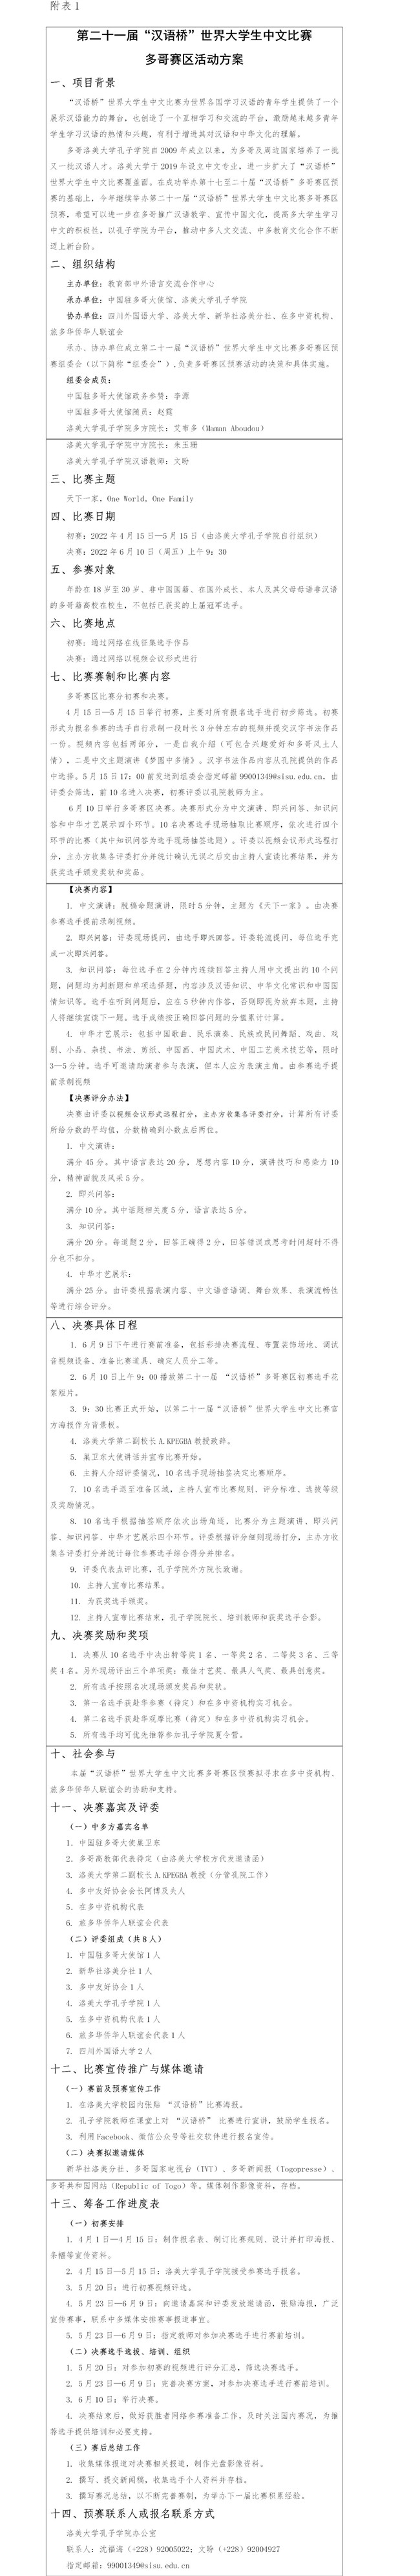 第二十一届“汉语桥”世界大学生中文比赛多哥赛区活动方案.jpg